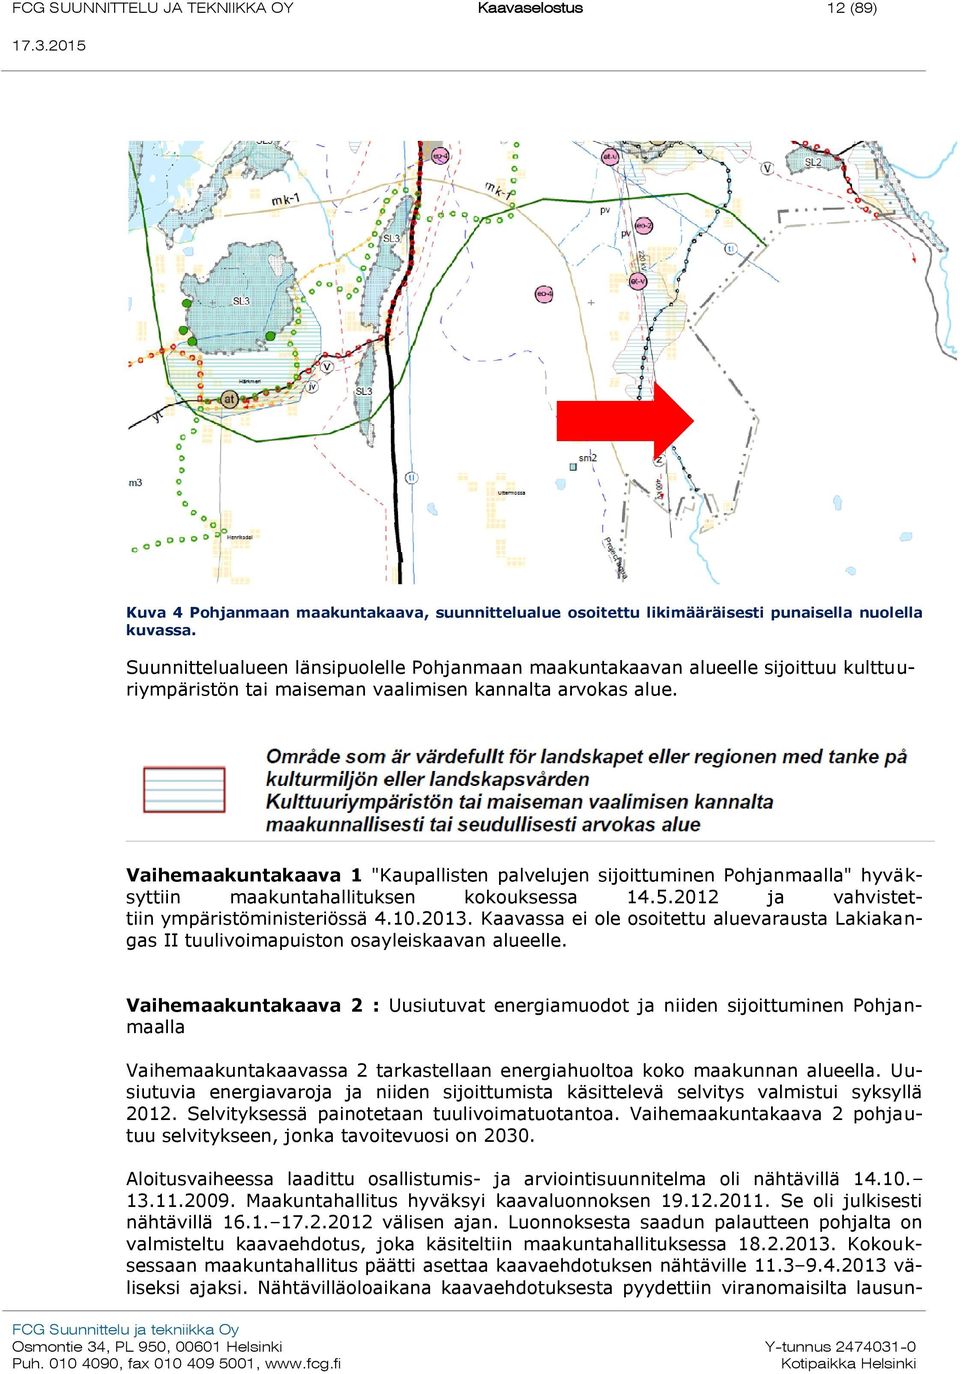 Vaihemaakuntakaava 1 "Kaupallisten palvelujen sijoittuminen Pohjanmaalla" hyväksyttiin maakuntahallituksen kokouksessa 14.5.2012 ja vahvistettiin ympäristöministeriössä 4.10.2013.